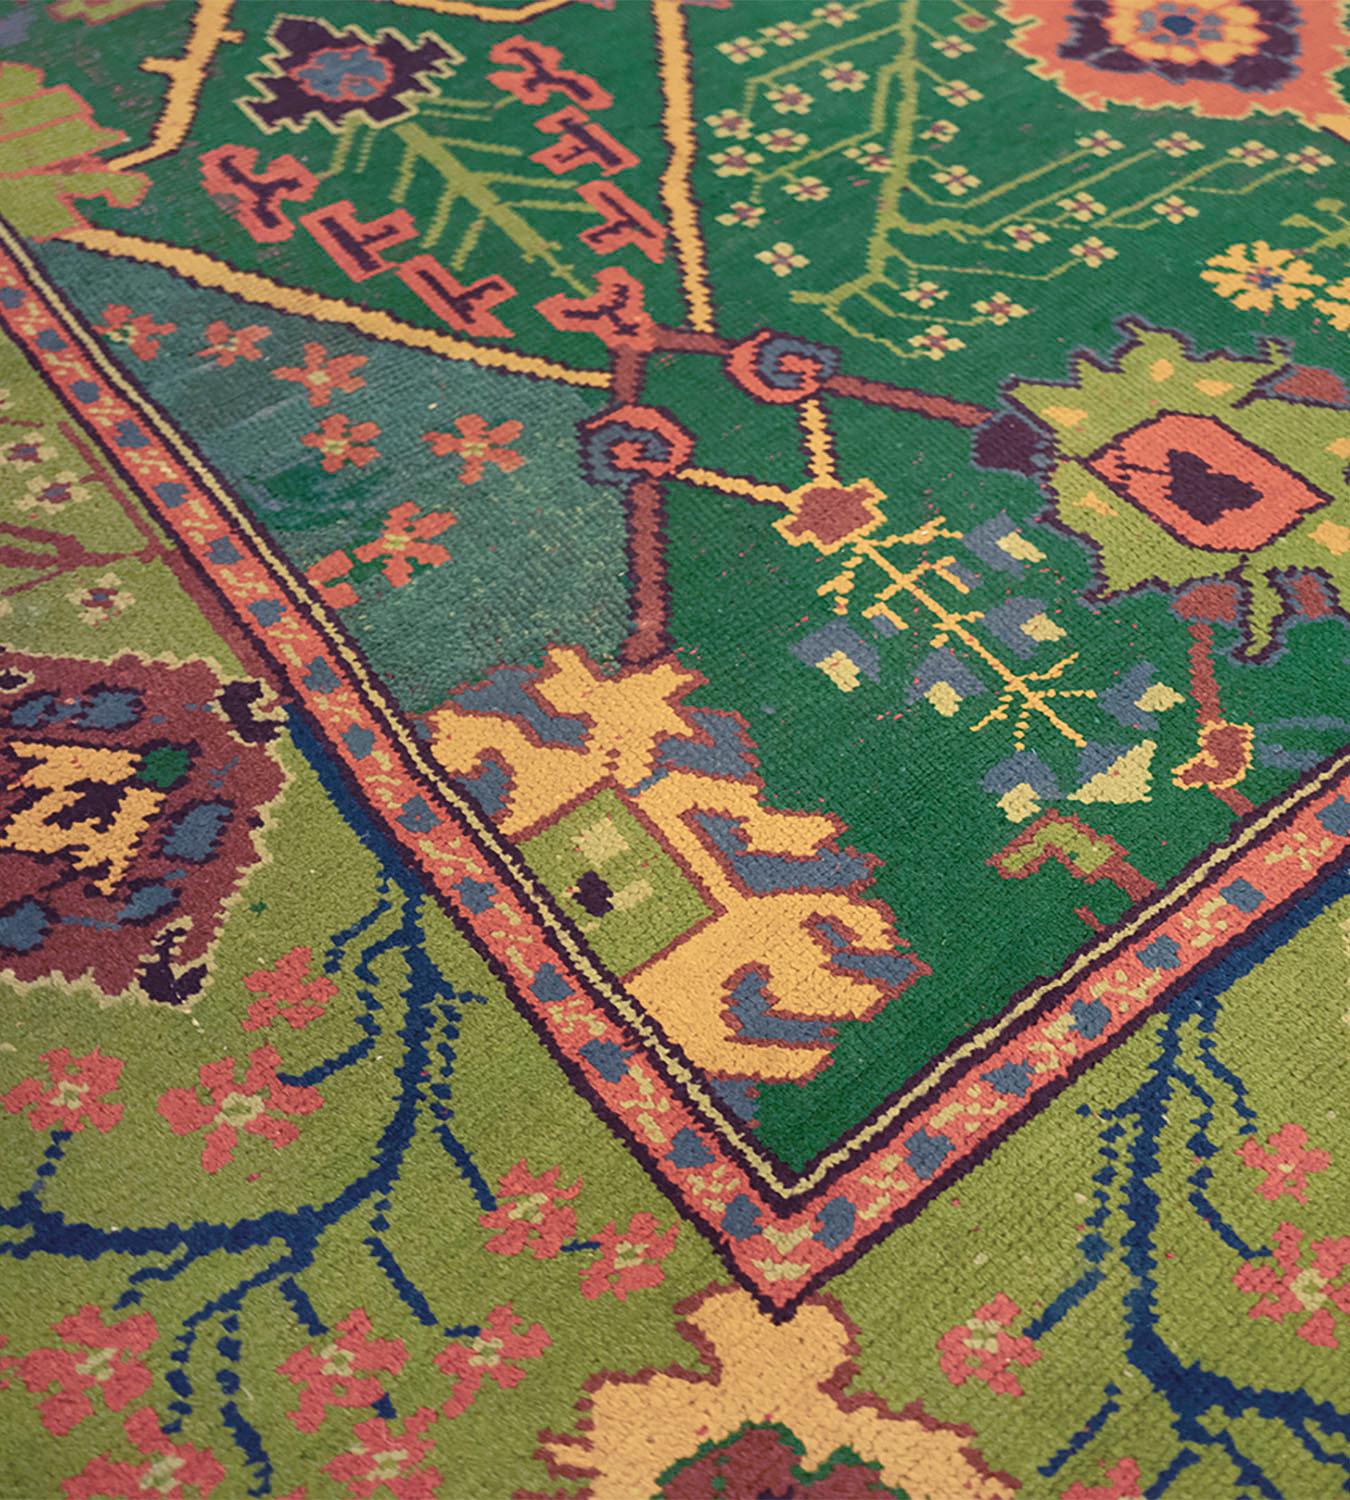 Dieser traditionelle, handgewebte irische Donegal-Teppich hat ein schattiertes, flaschengrünes Feld mit einem gegensätzlichen Muster aus eckigen Ranken, die Palmetten und offene Palmetten hervorbringen, die mehrere blühende Pflanzen umschließen, in